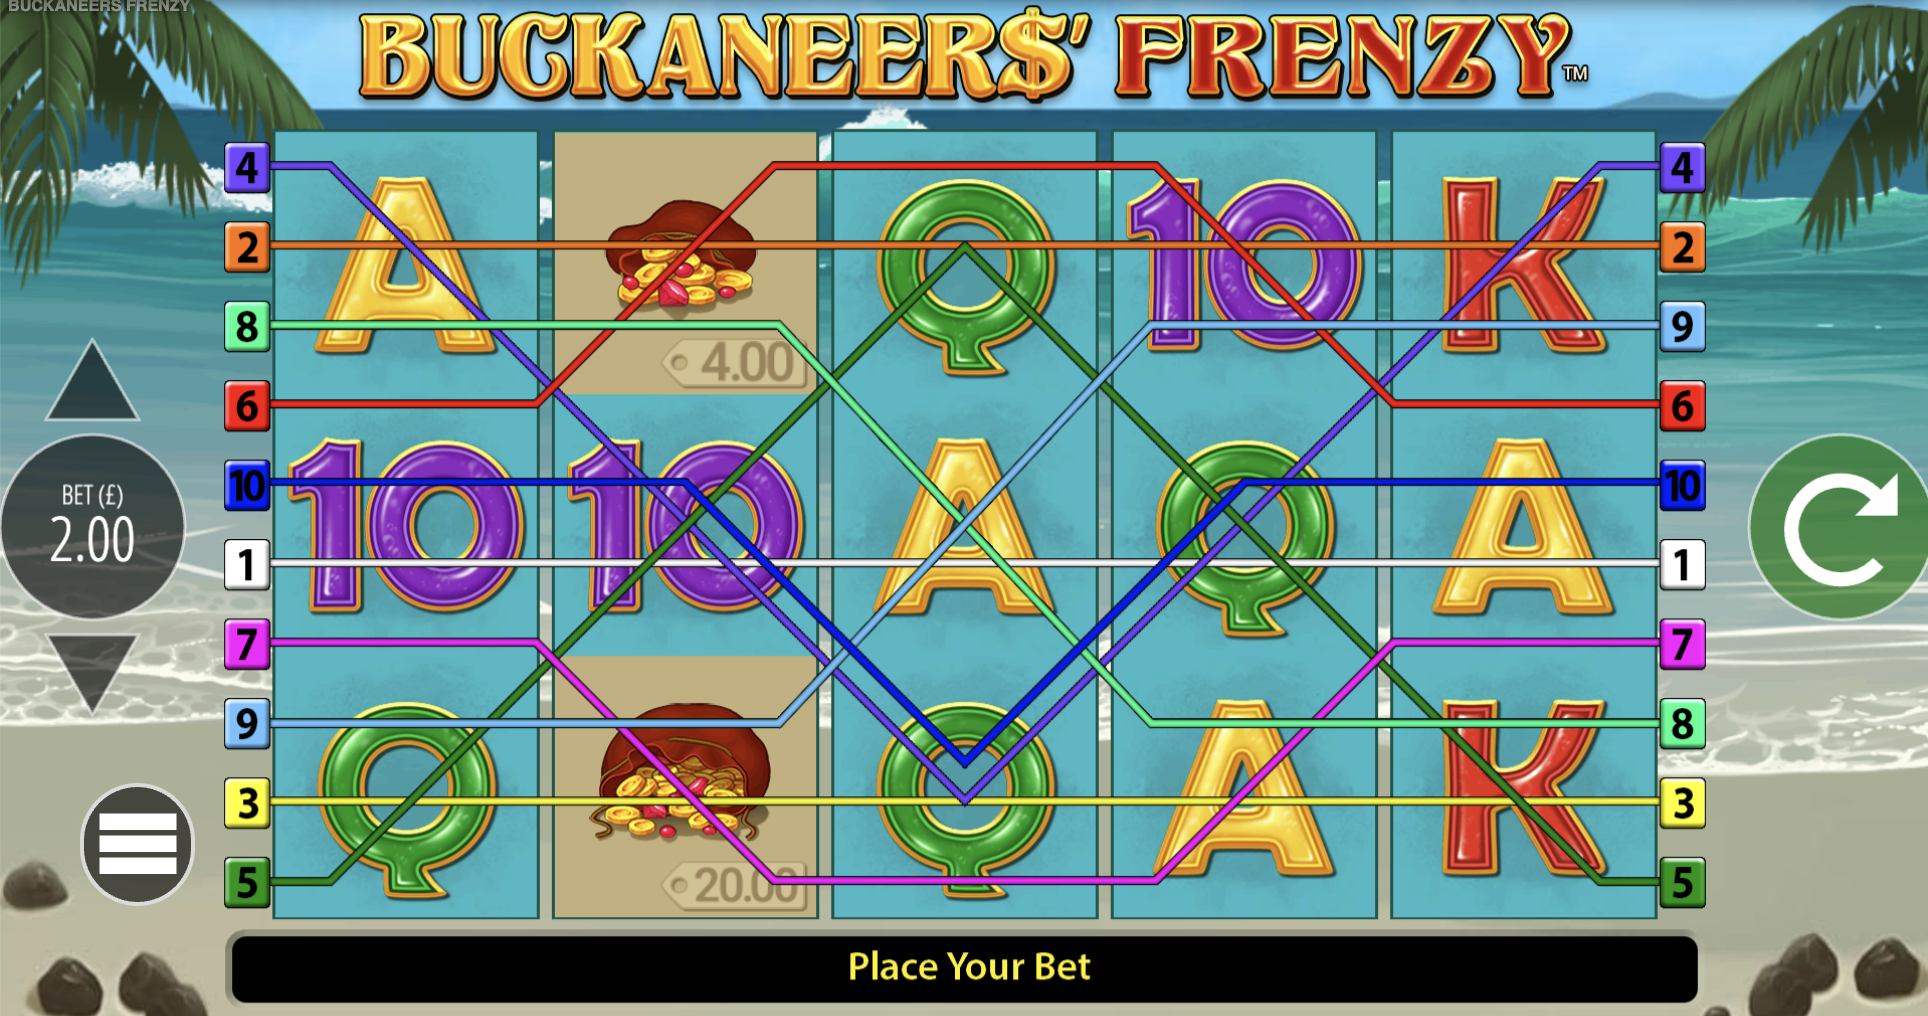 Buckaneers-Frenzy-Pirate-Slots-Games